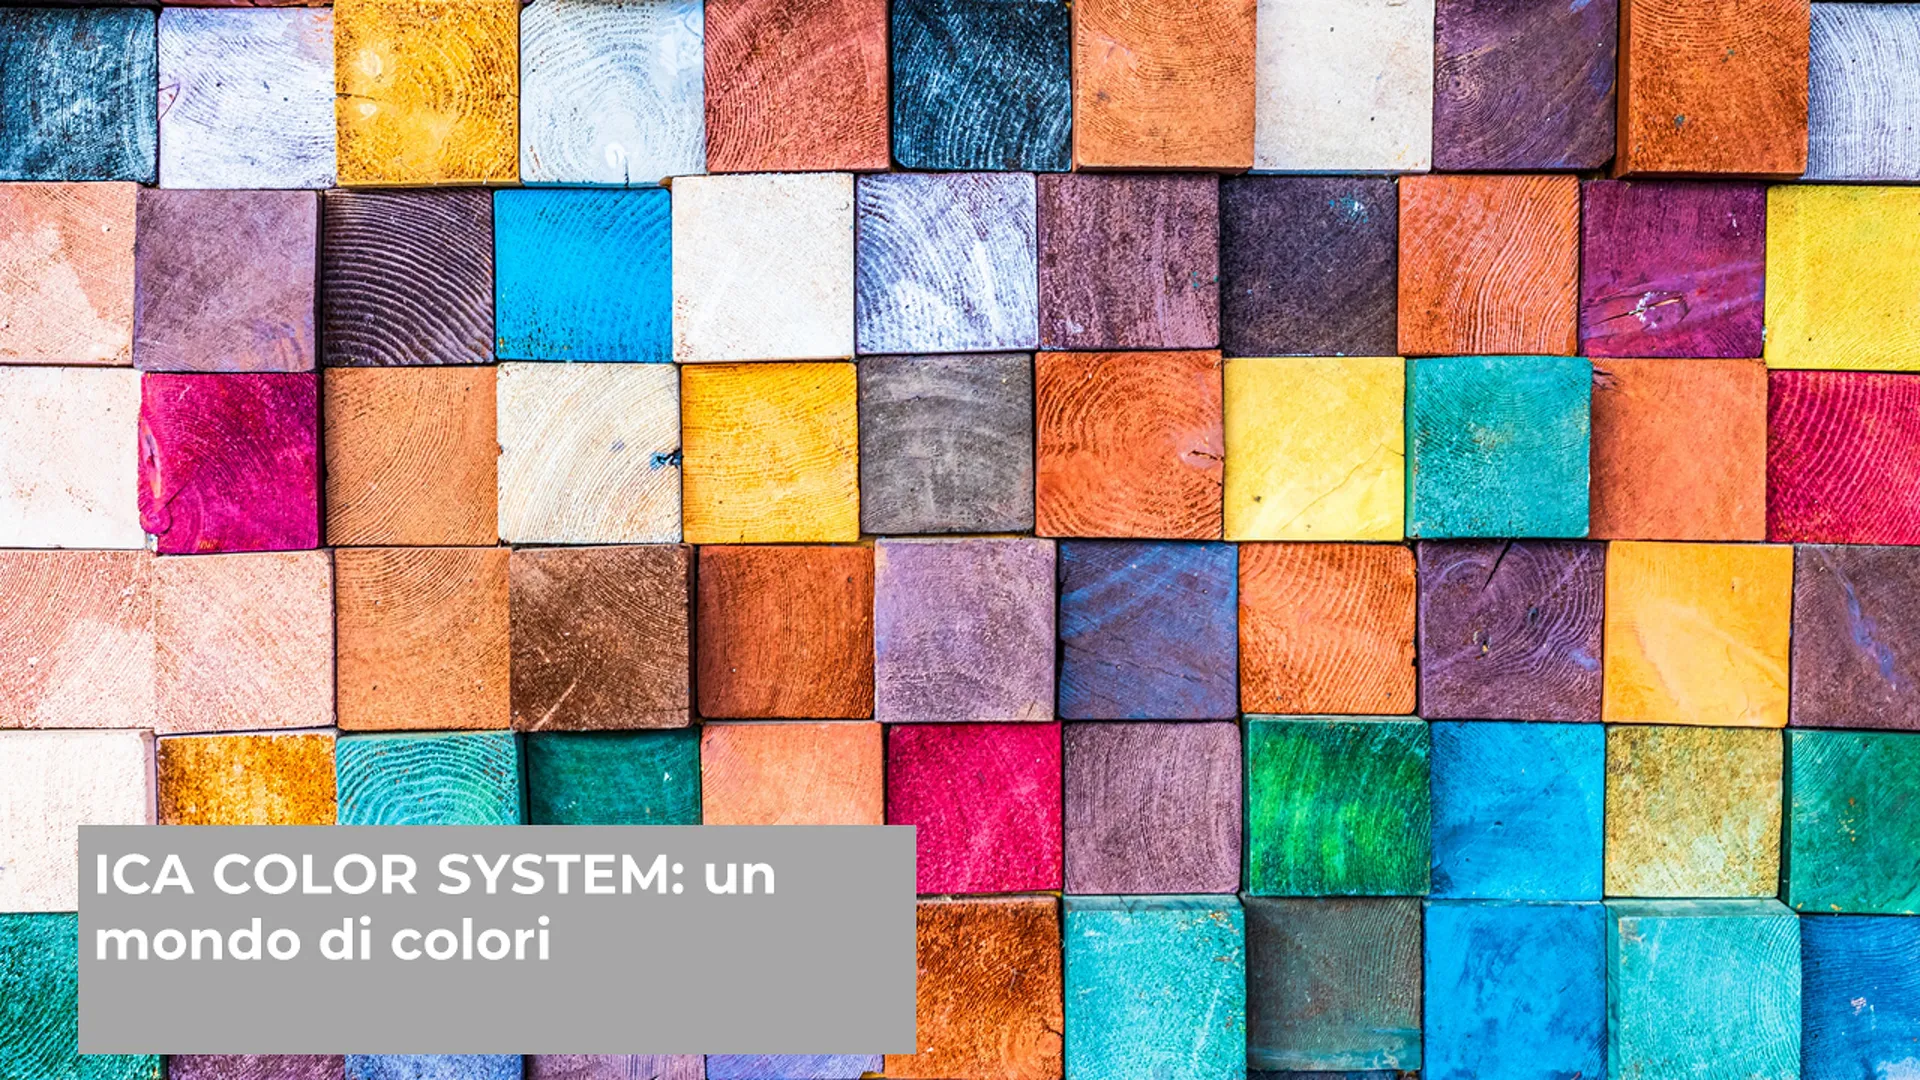 ICA COLOR SYSTEM: un mondo di colori